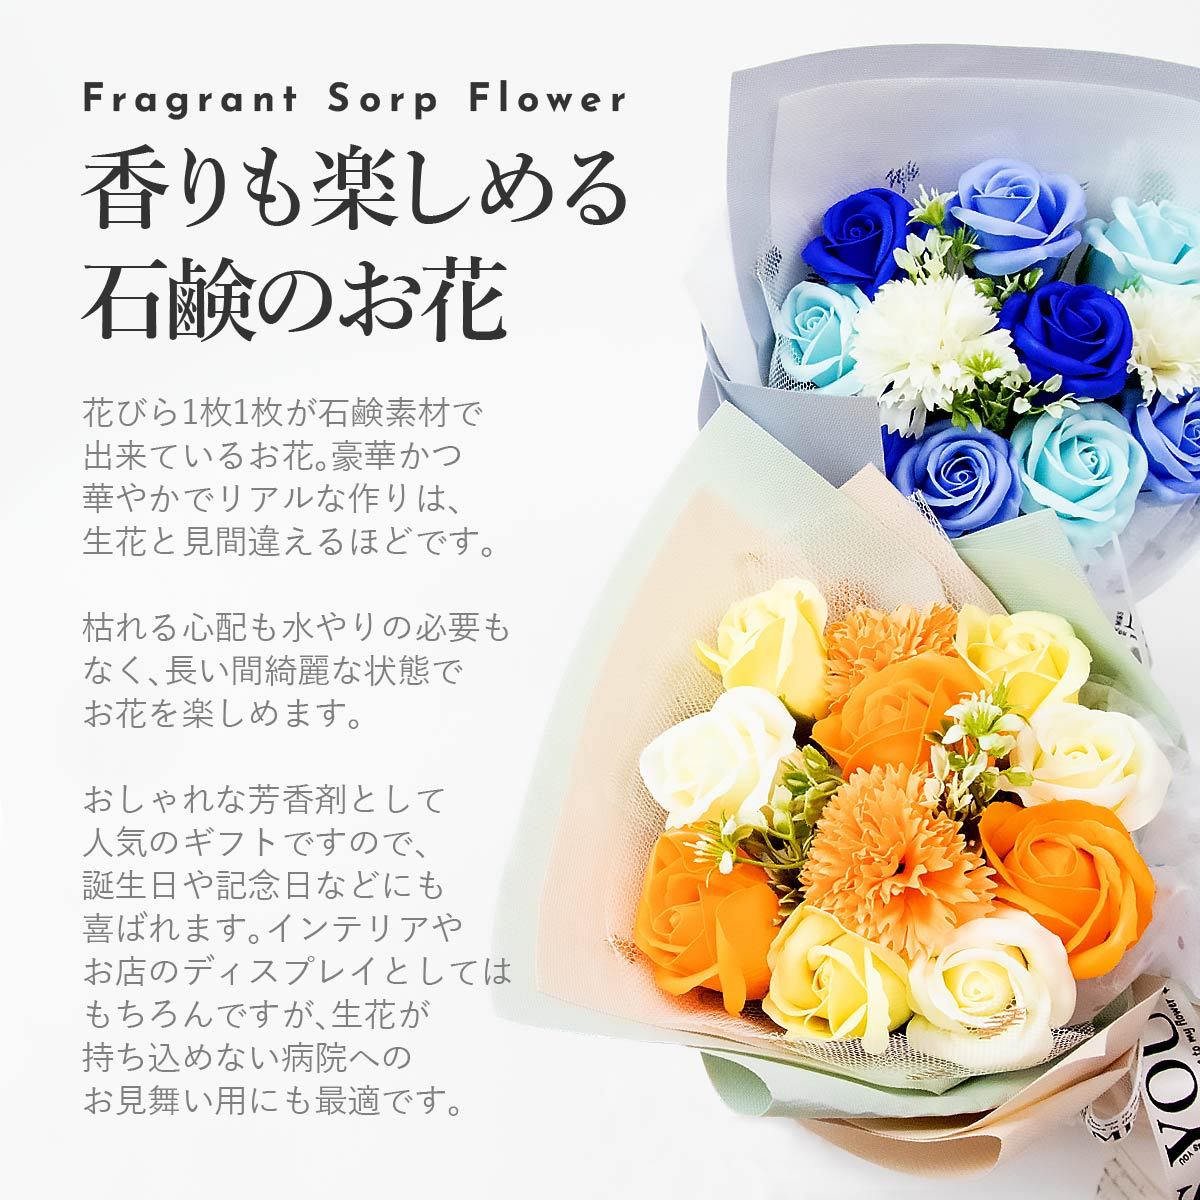 [.komi высота оценка ] подарок цветок мыло цветок букет букет независимый большой подарок гвоздика букет ... box . работа праздник .